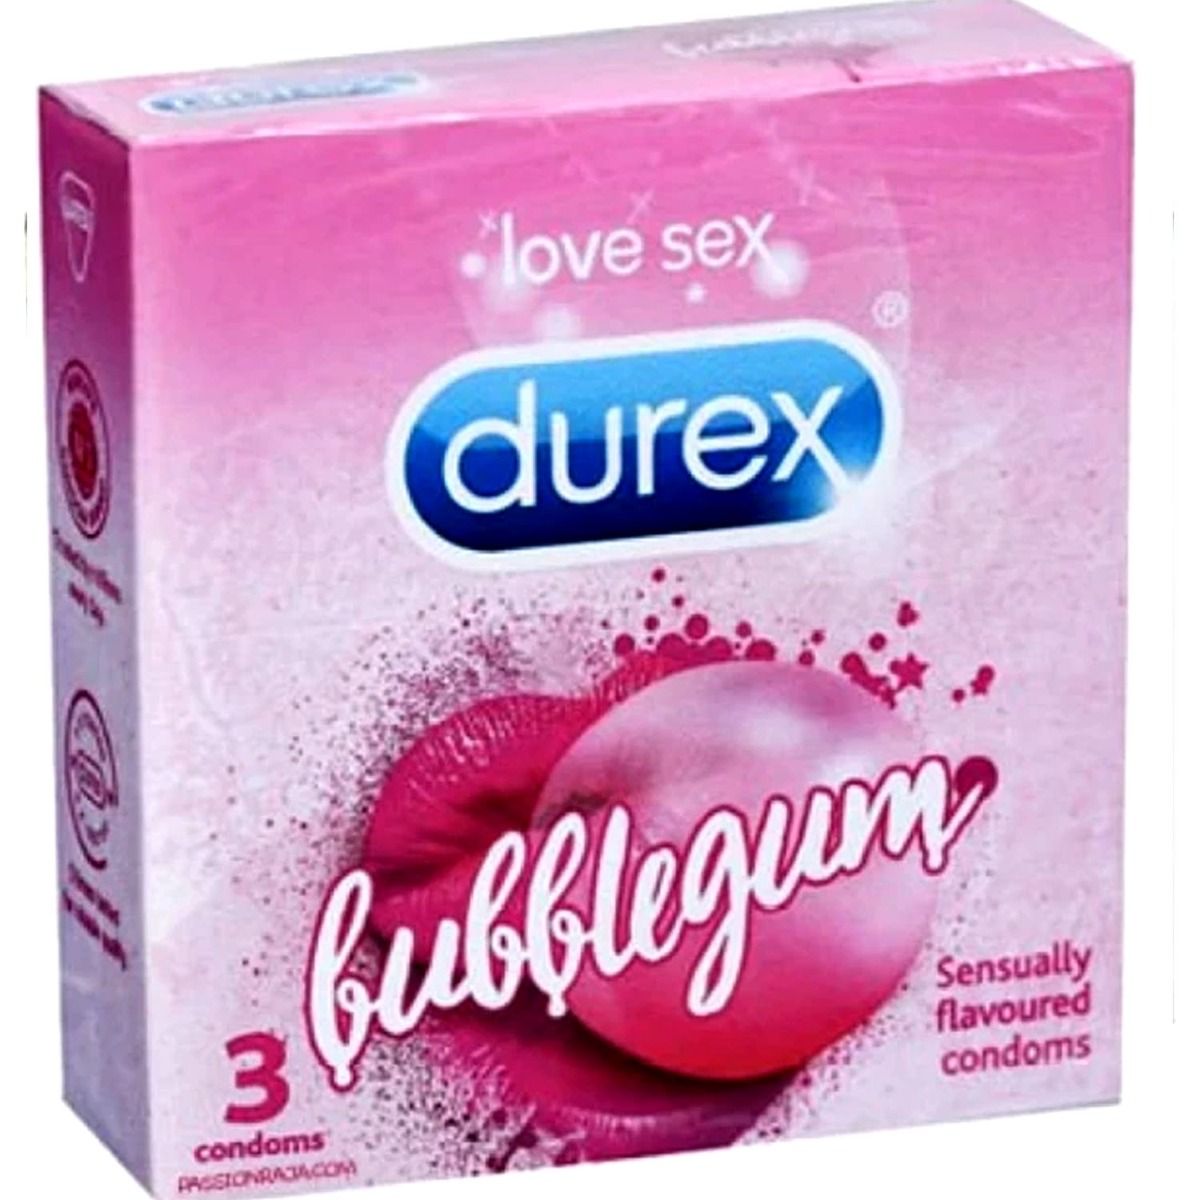 Buy Durex Bubblegum Flavoured Condoms, 3 Count Online